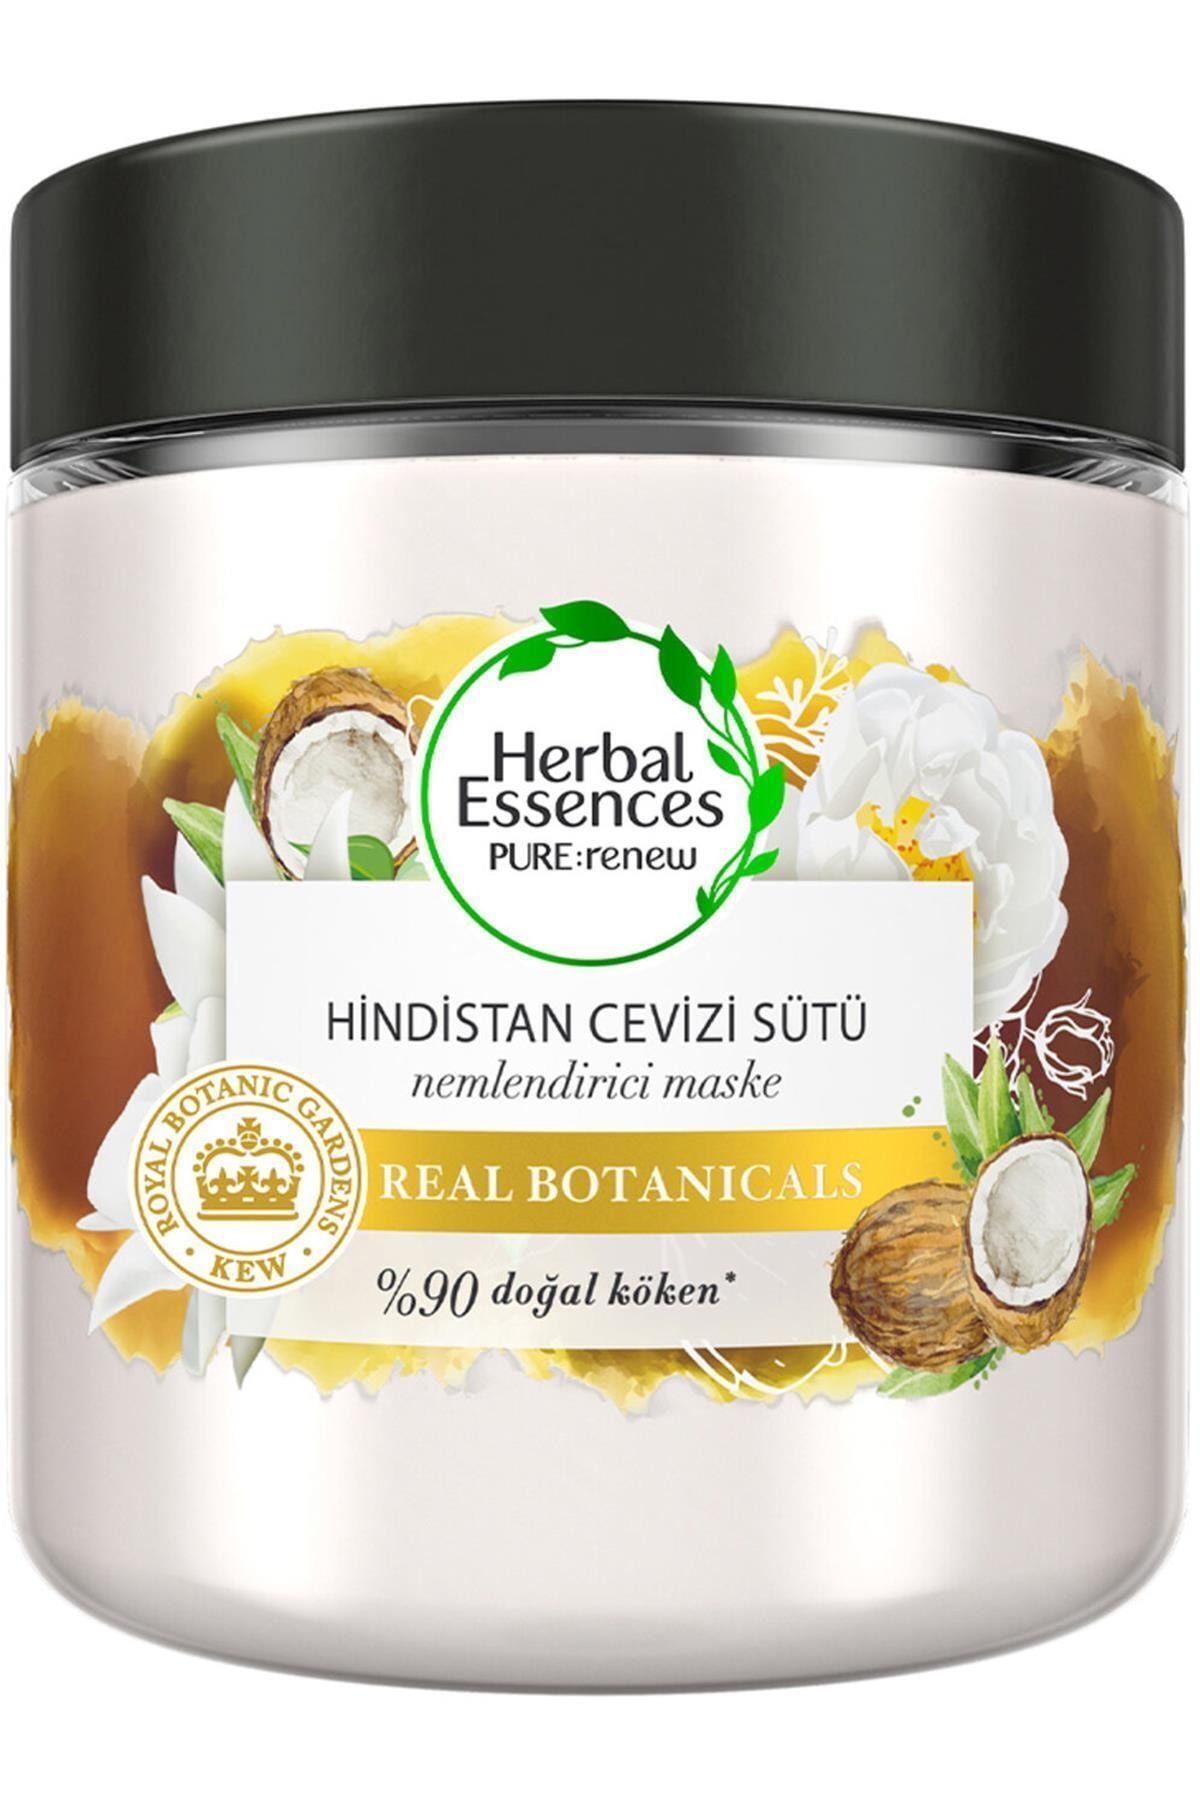 Herbal Essences Marka: Hindistan Cevizi Sütü Nemlendirici 250 Ml Kategori: Duş Jeli